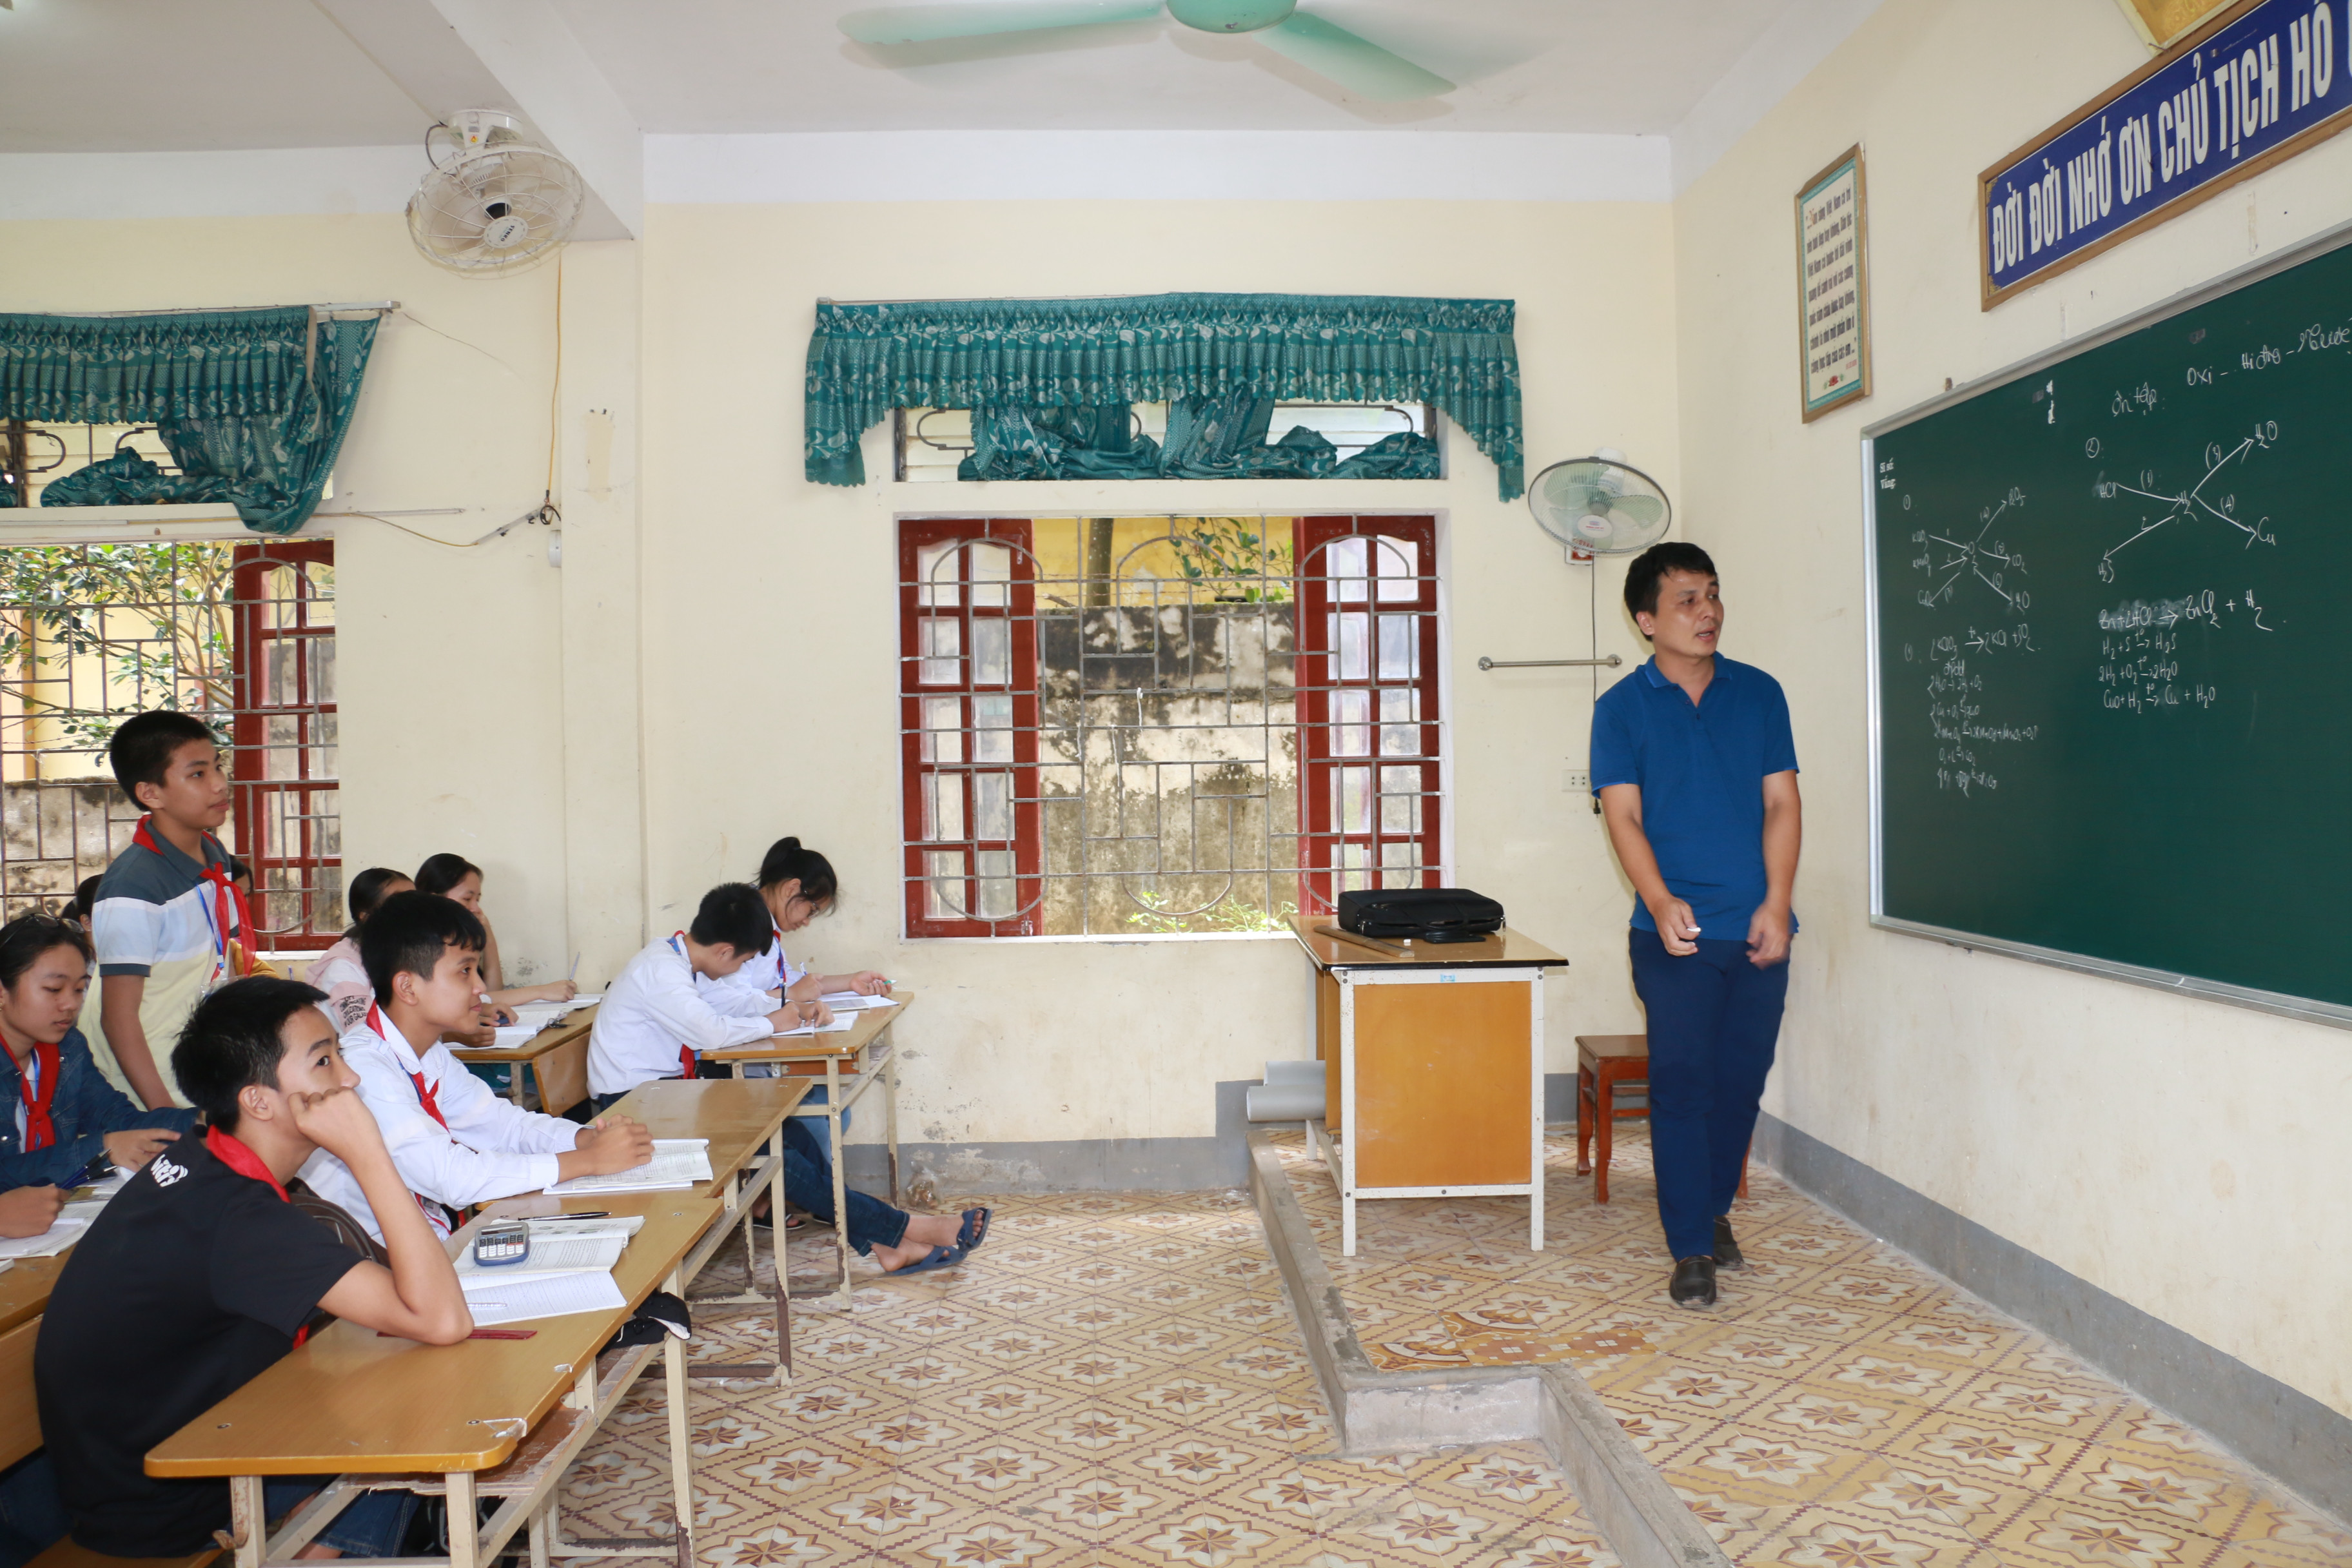 Tiết học của học sinh lớp 9 - Trường THCS Tôn Quang Phiệt (Thanh Chương). Ảnh: Mỹ Hà